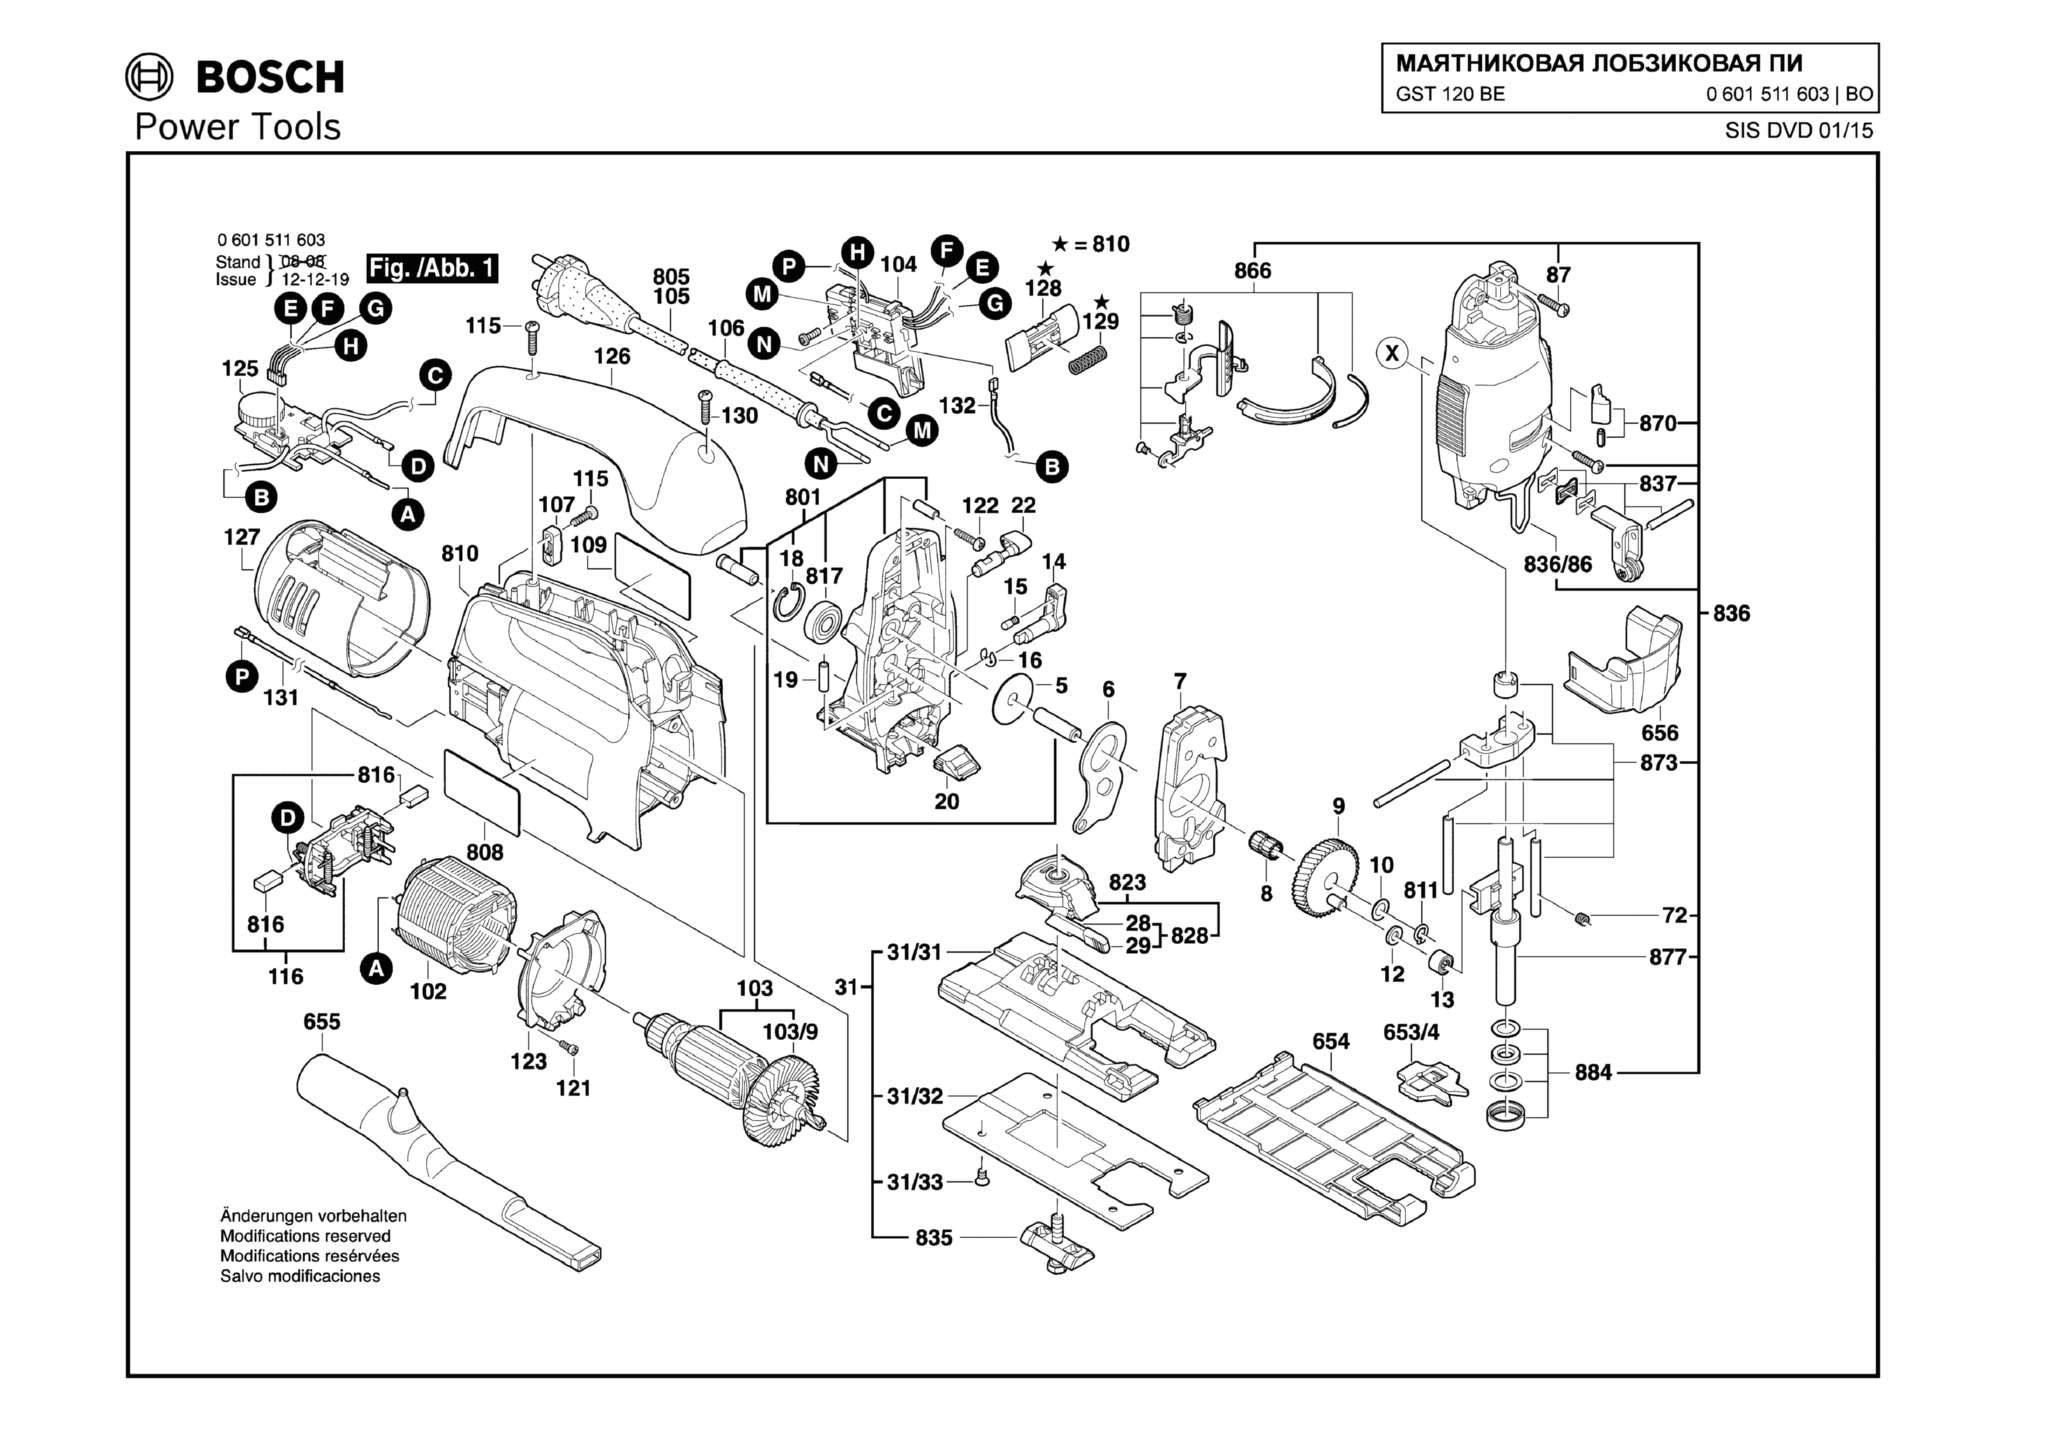 Запчасти, схема и деталировка Bosch GST 120 BE (ТИП 0601511603)